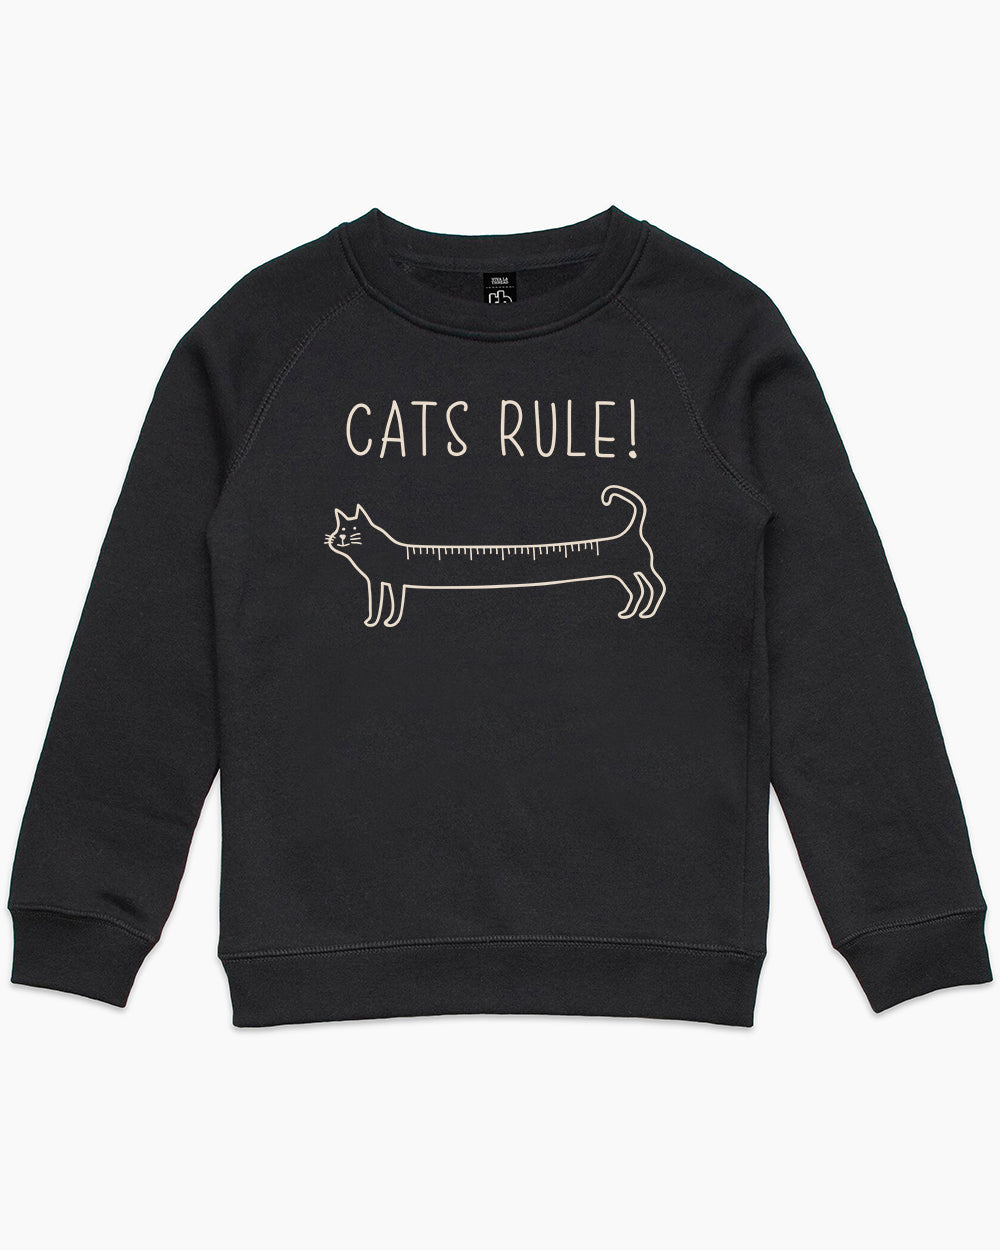 Cats Rule Kids Sweater Australia Online #colour_black